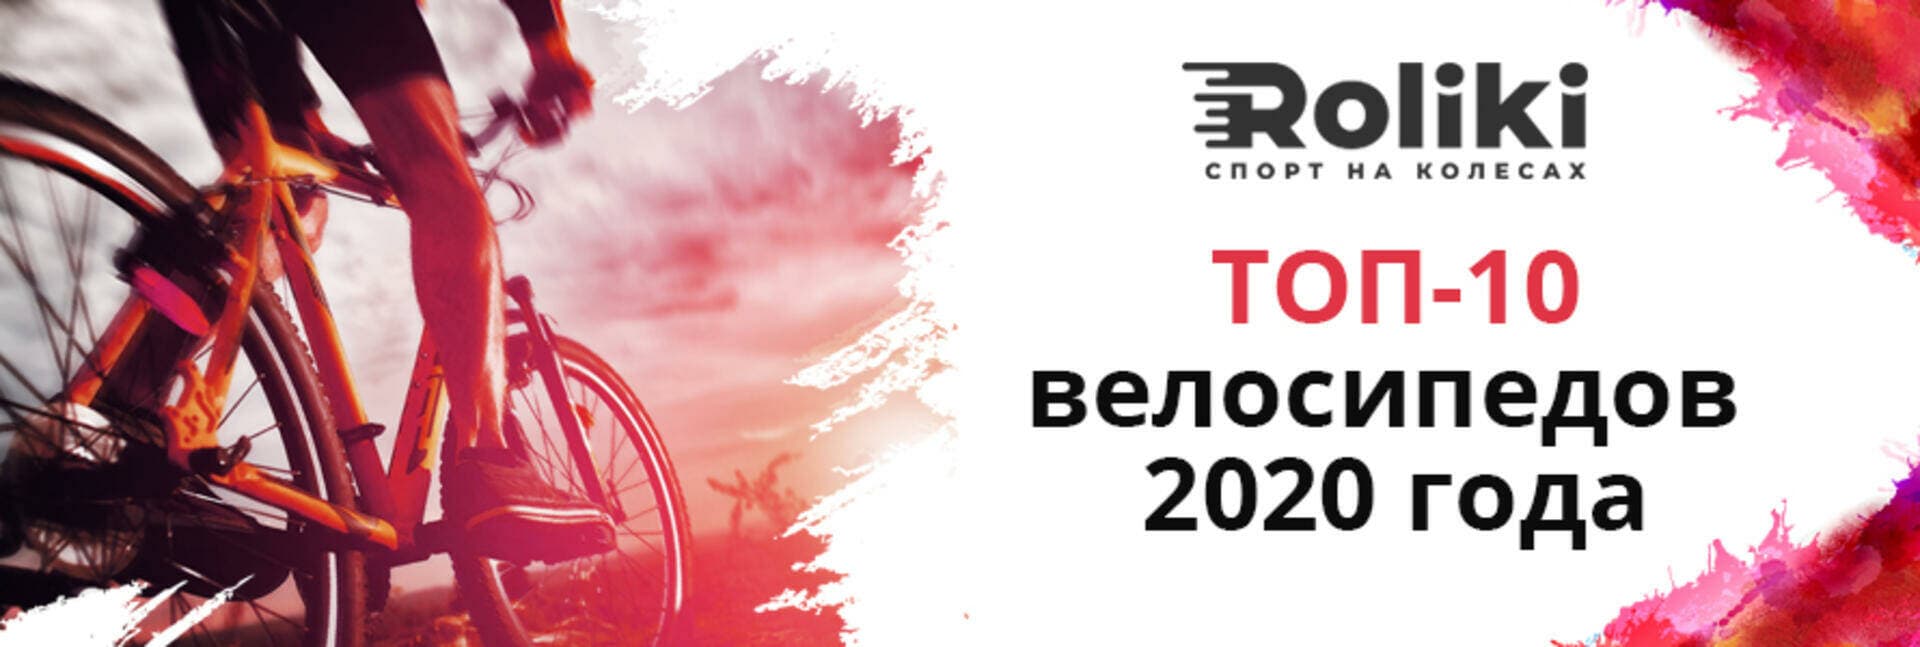 ТОП-10 велосипедов 2020 года